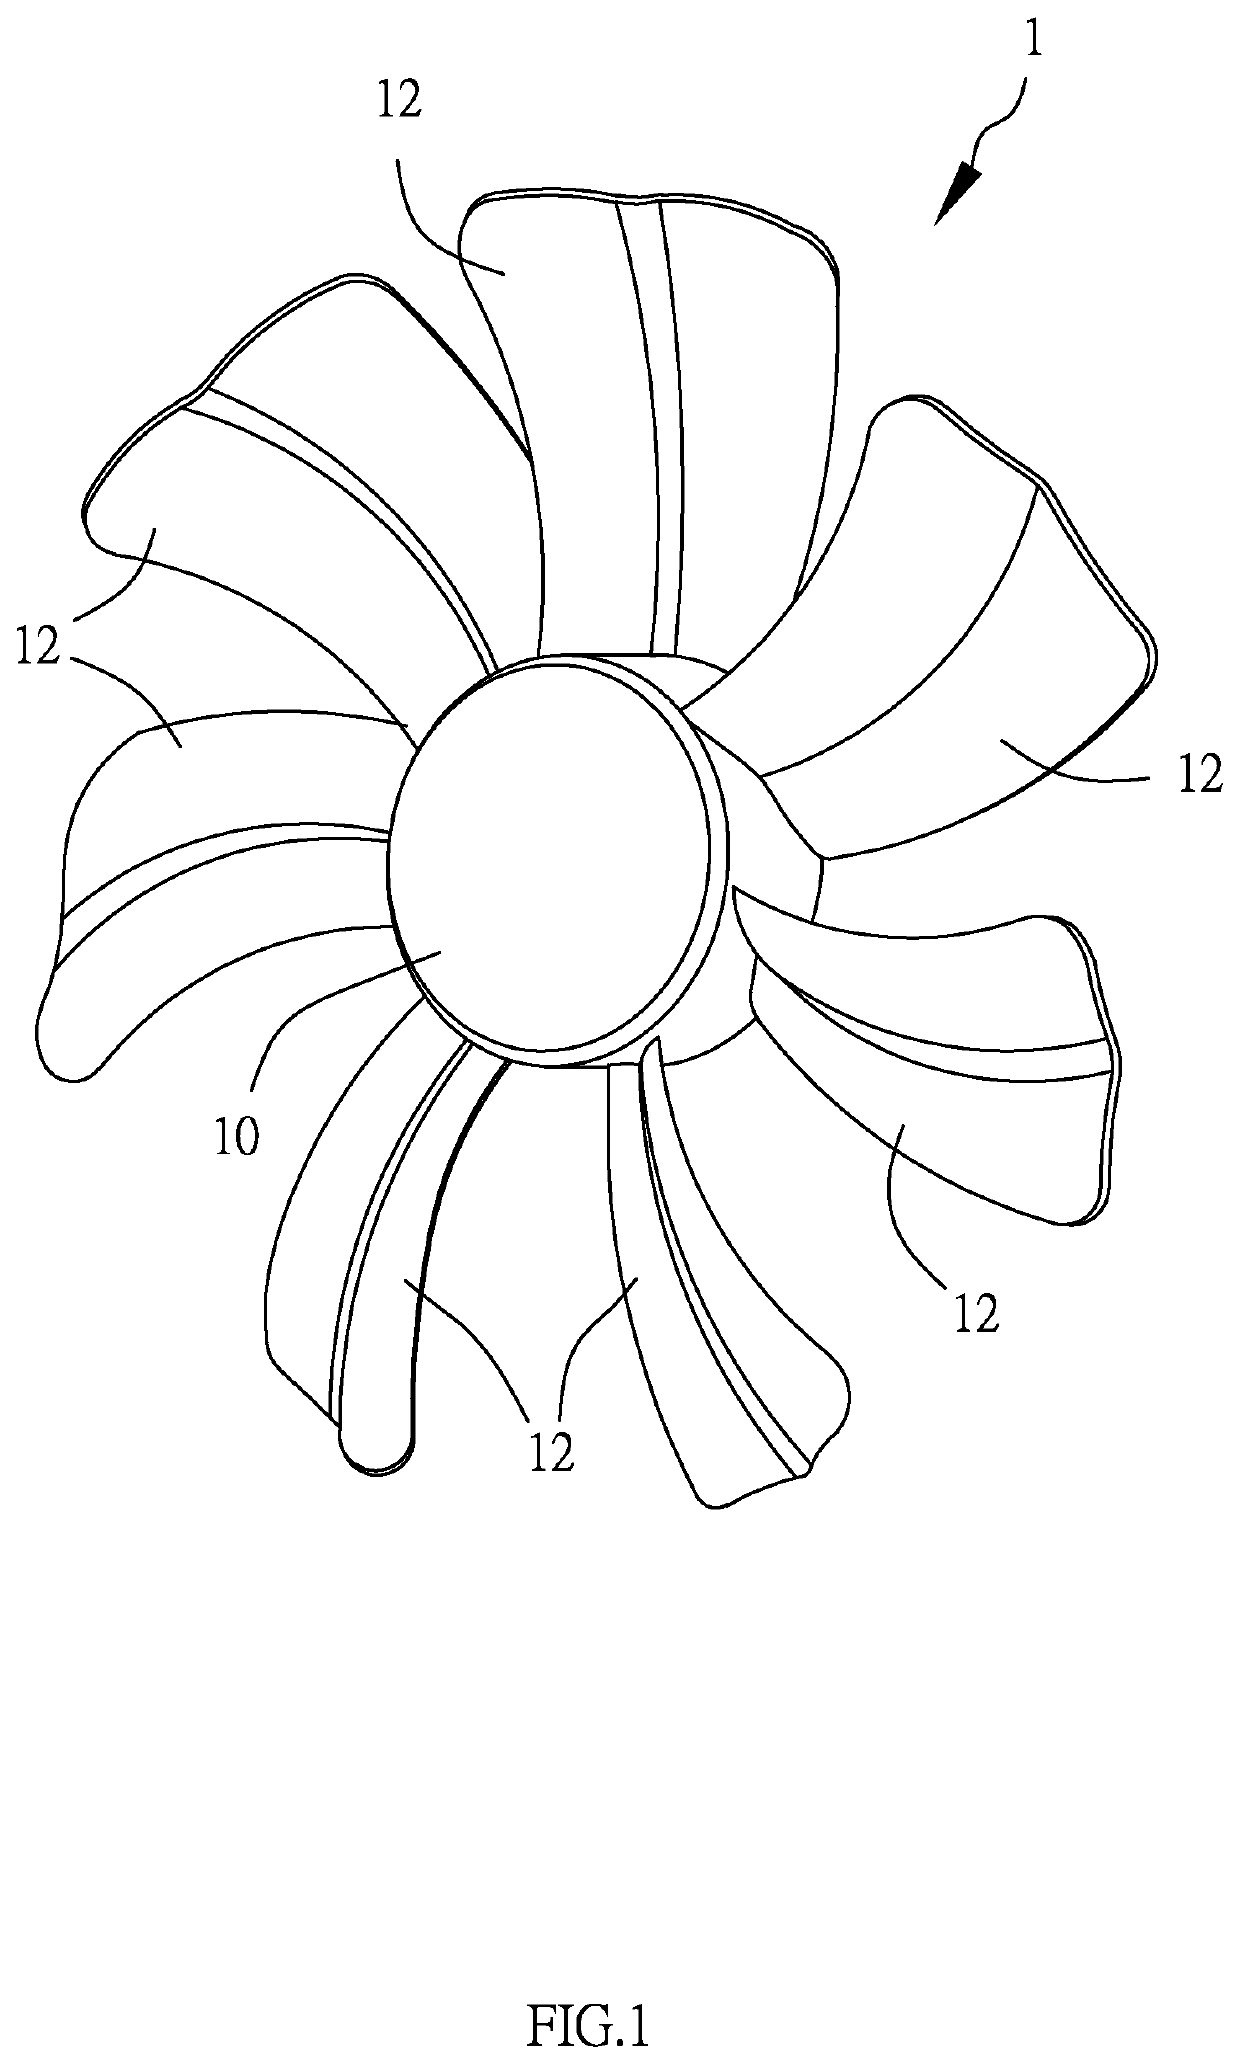 Fan blade structure